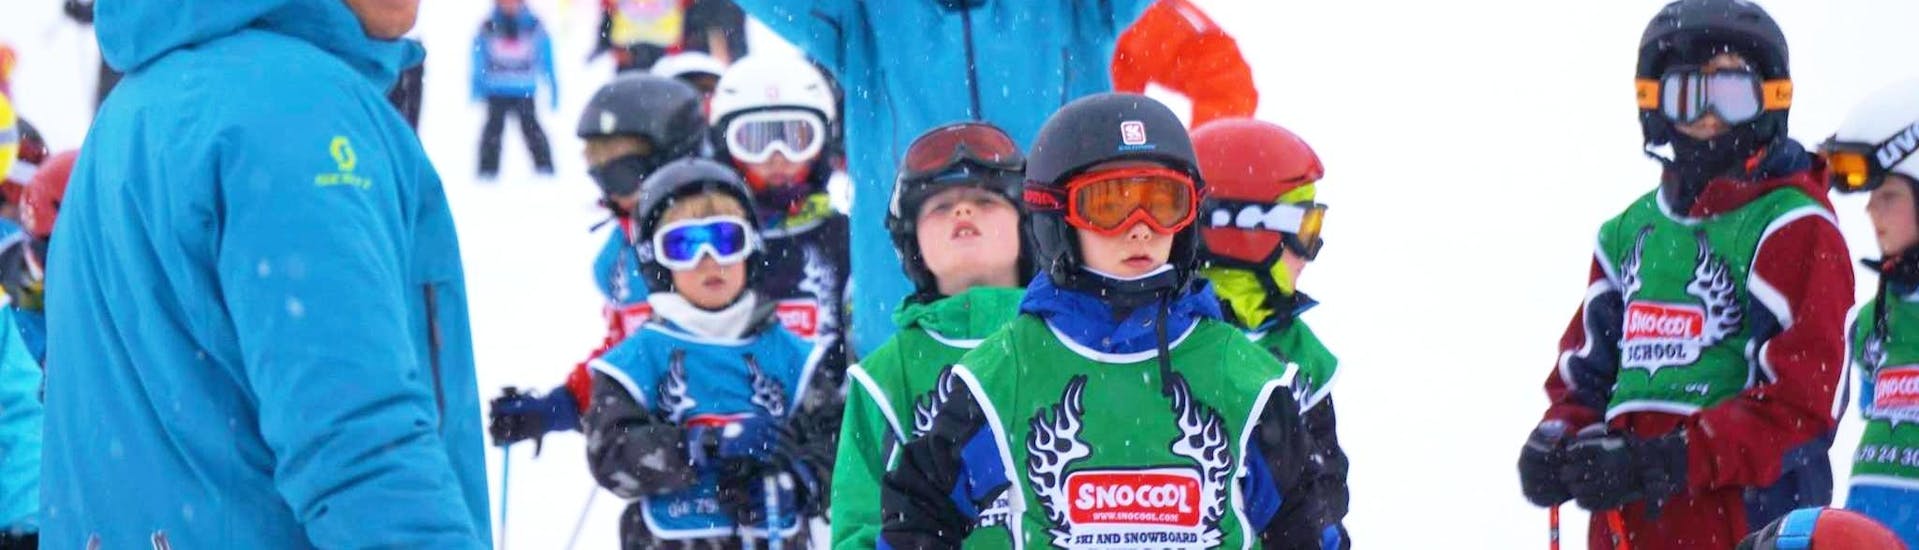 Leute, die einen privaten Skikurs für Kinder aller Levels bei Snocool in Sainte-Foy-Tarentaise besuchen.